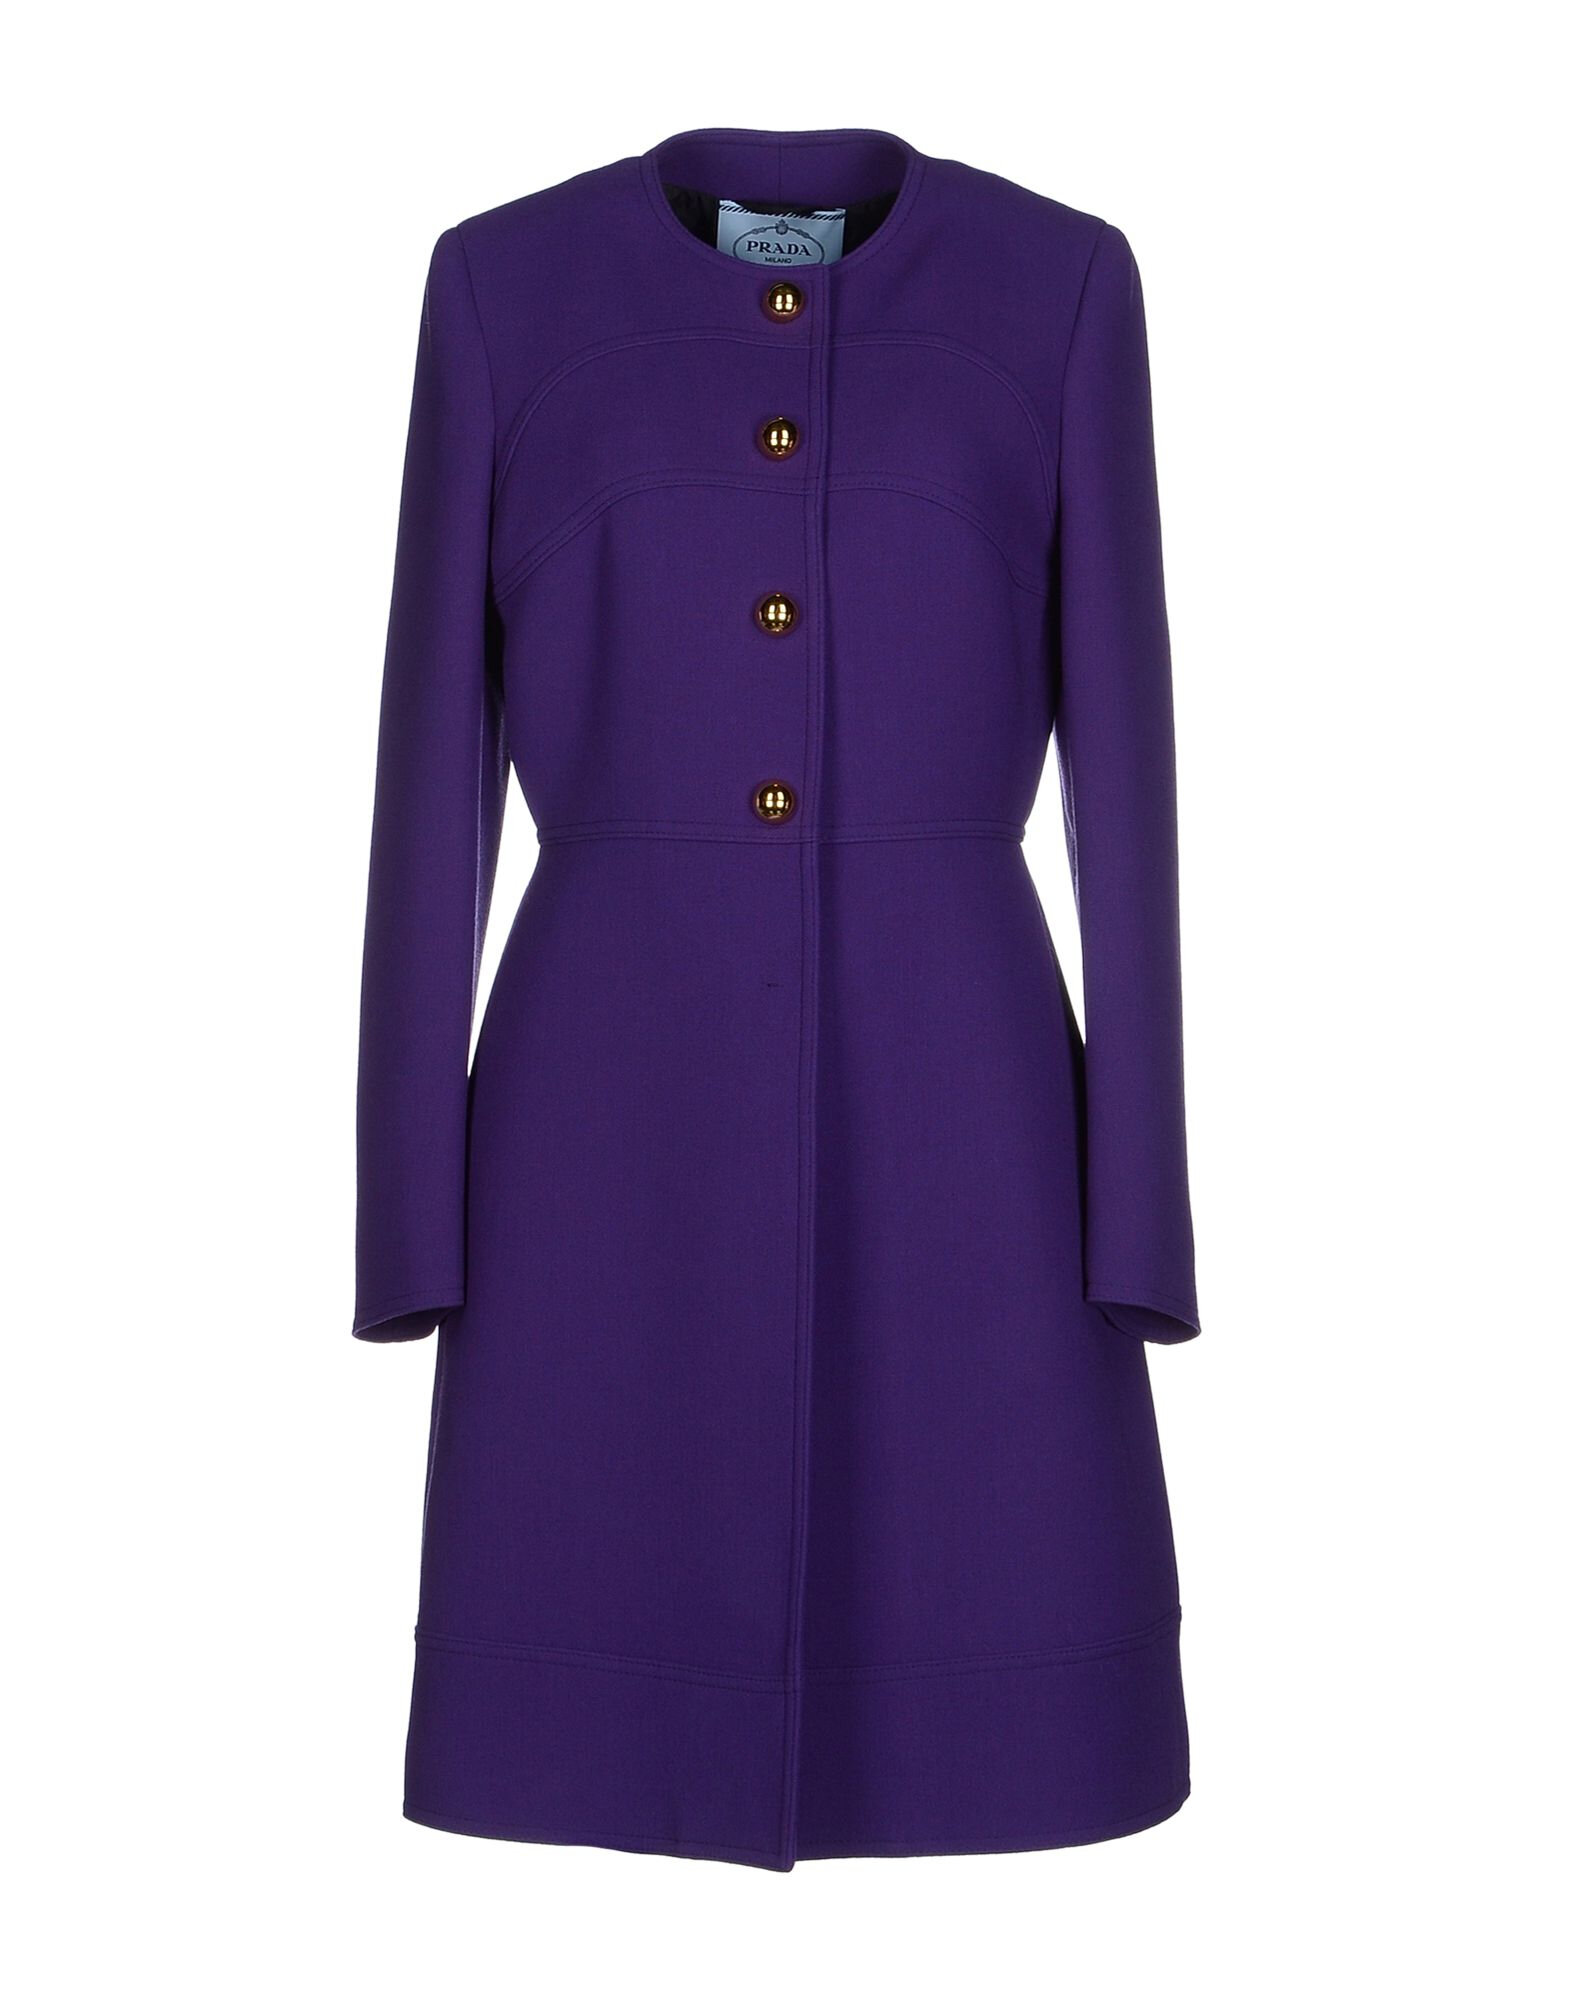 prada-purple-coat-product-1-280362861-normal.jpg